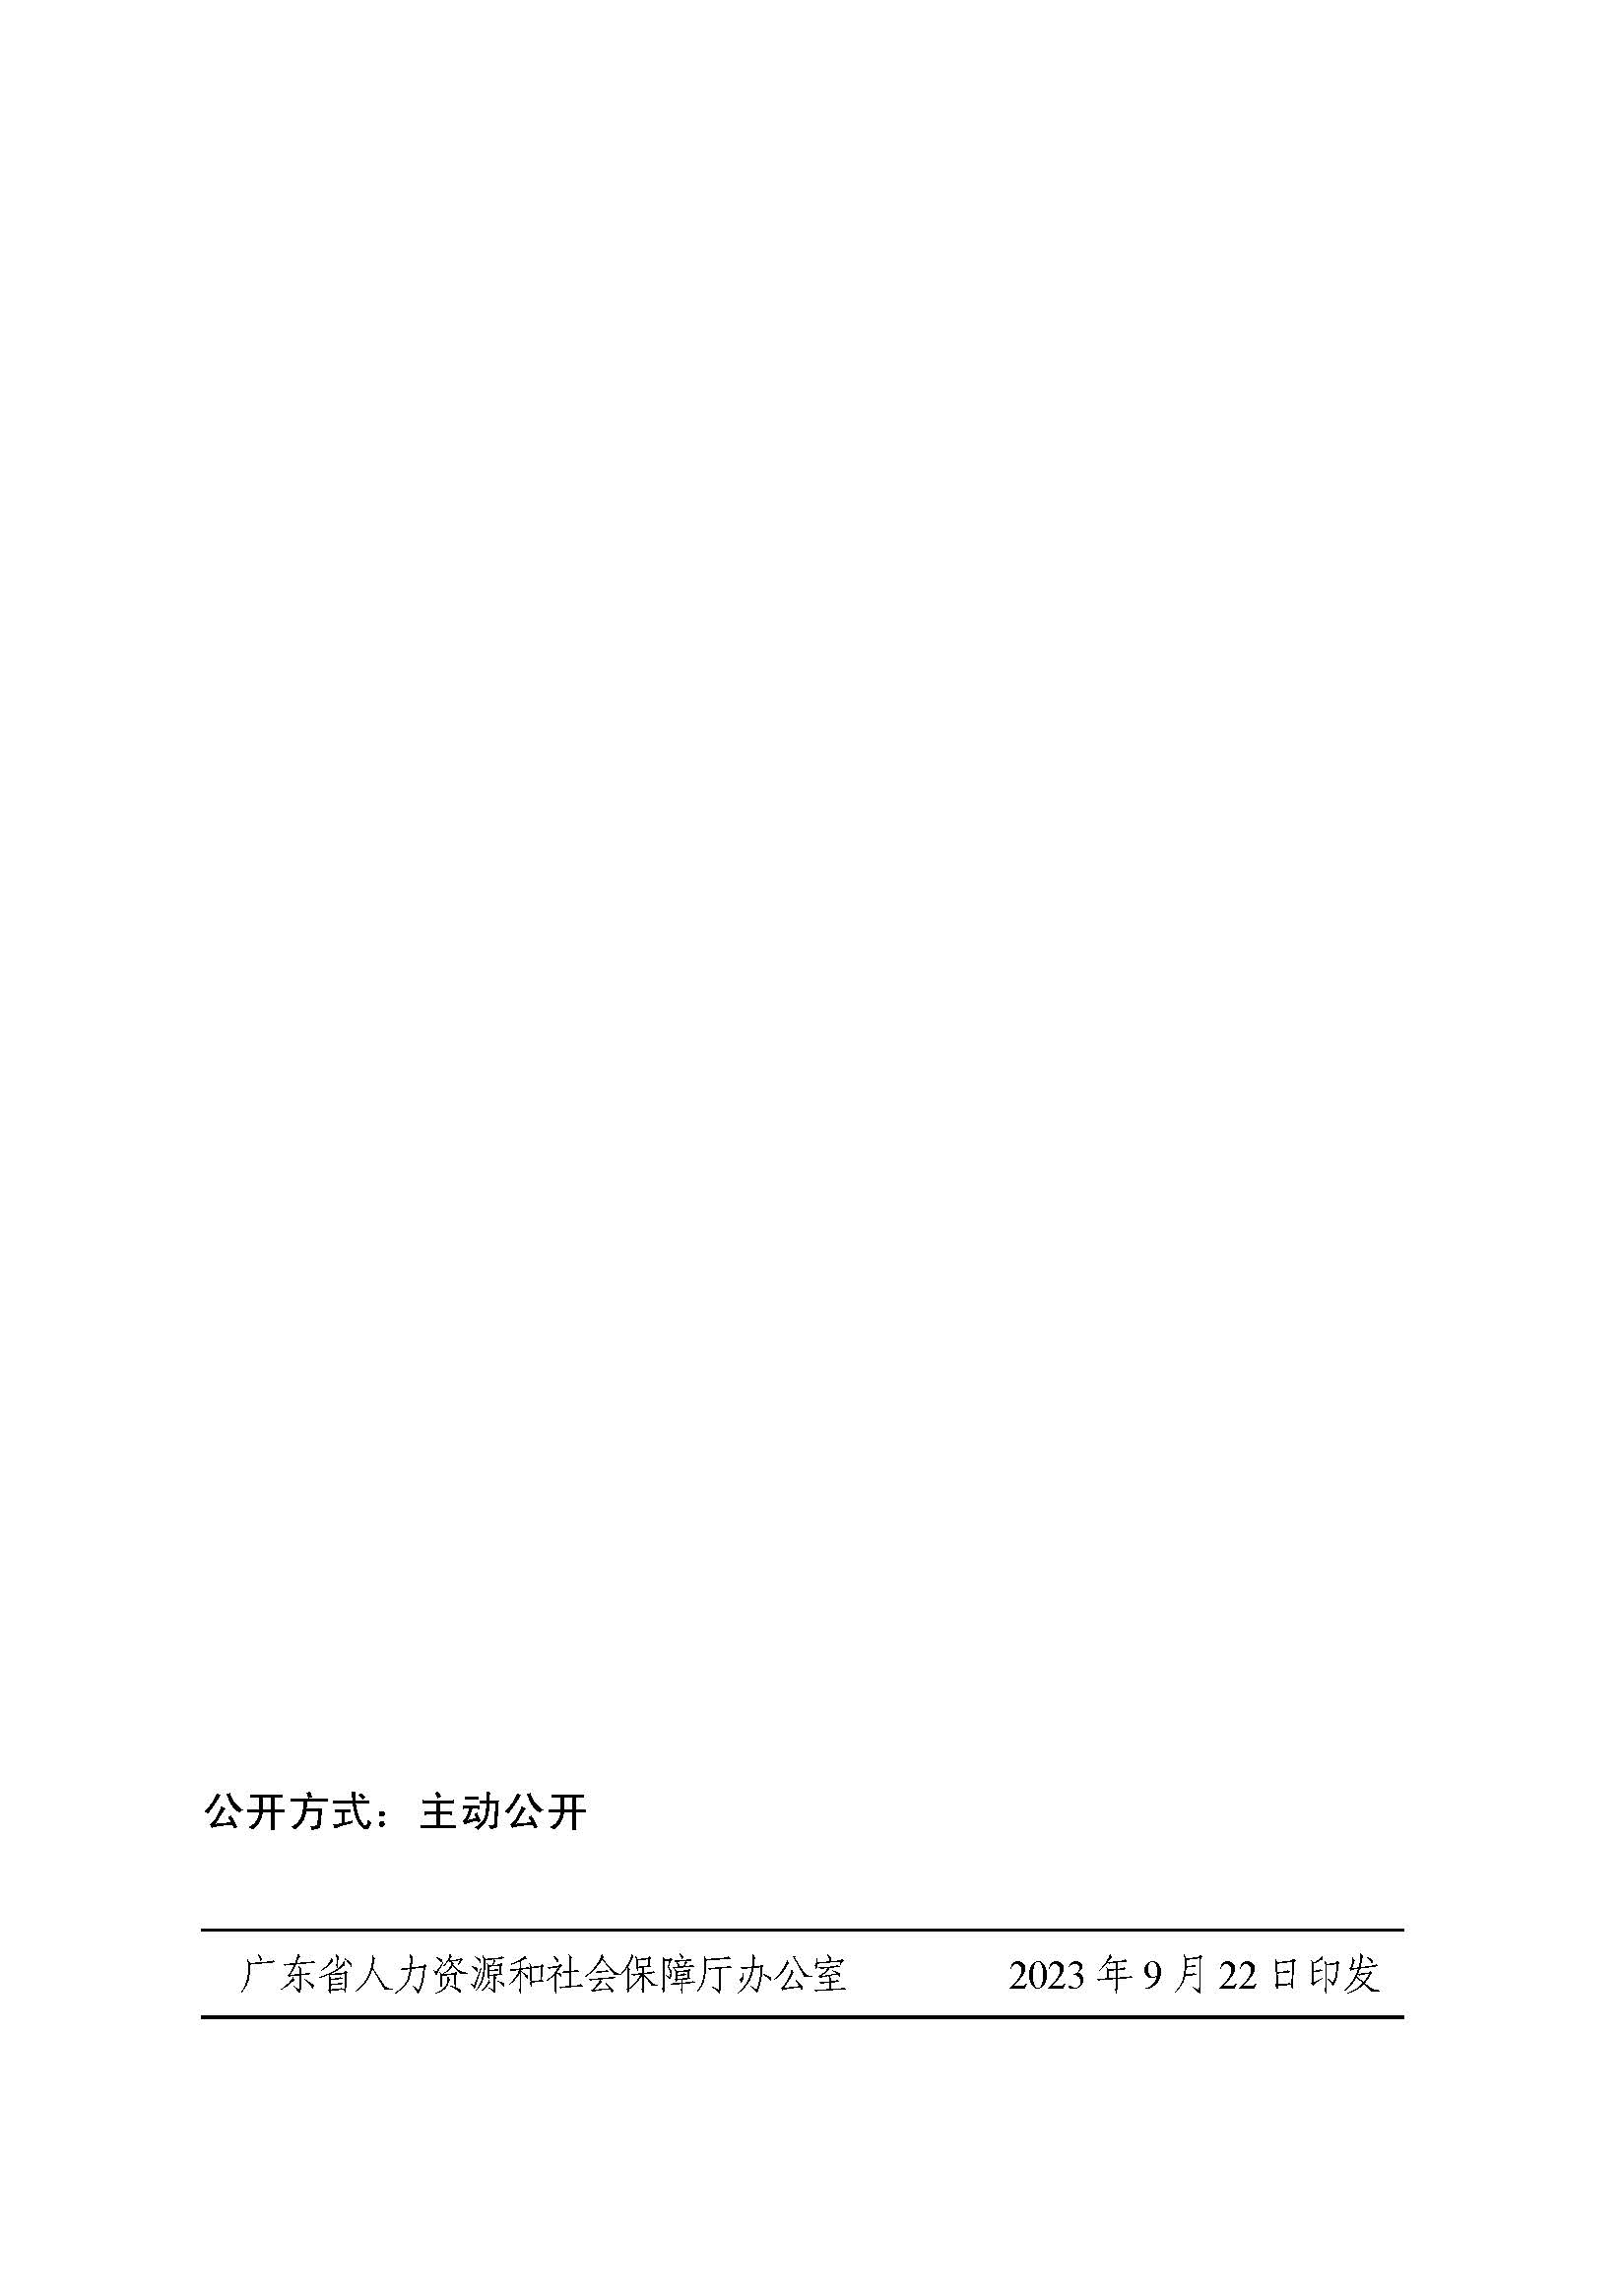 关于印发《广东省职工假期待遇和死亡抚恤待遇规定》的通知_页面_6.jpg